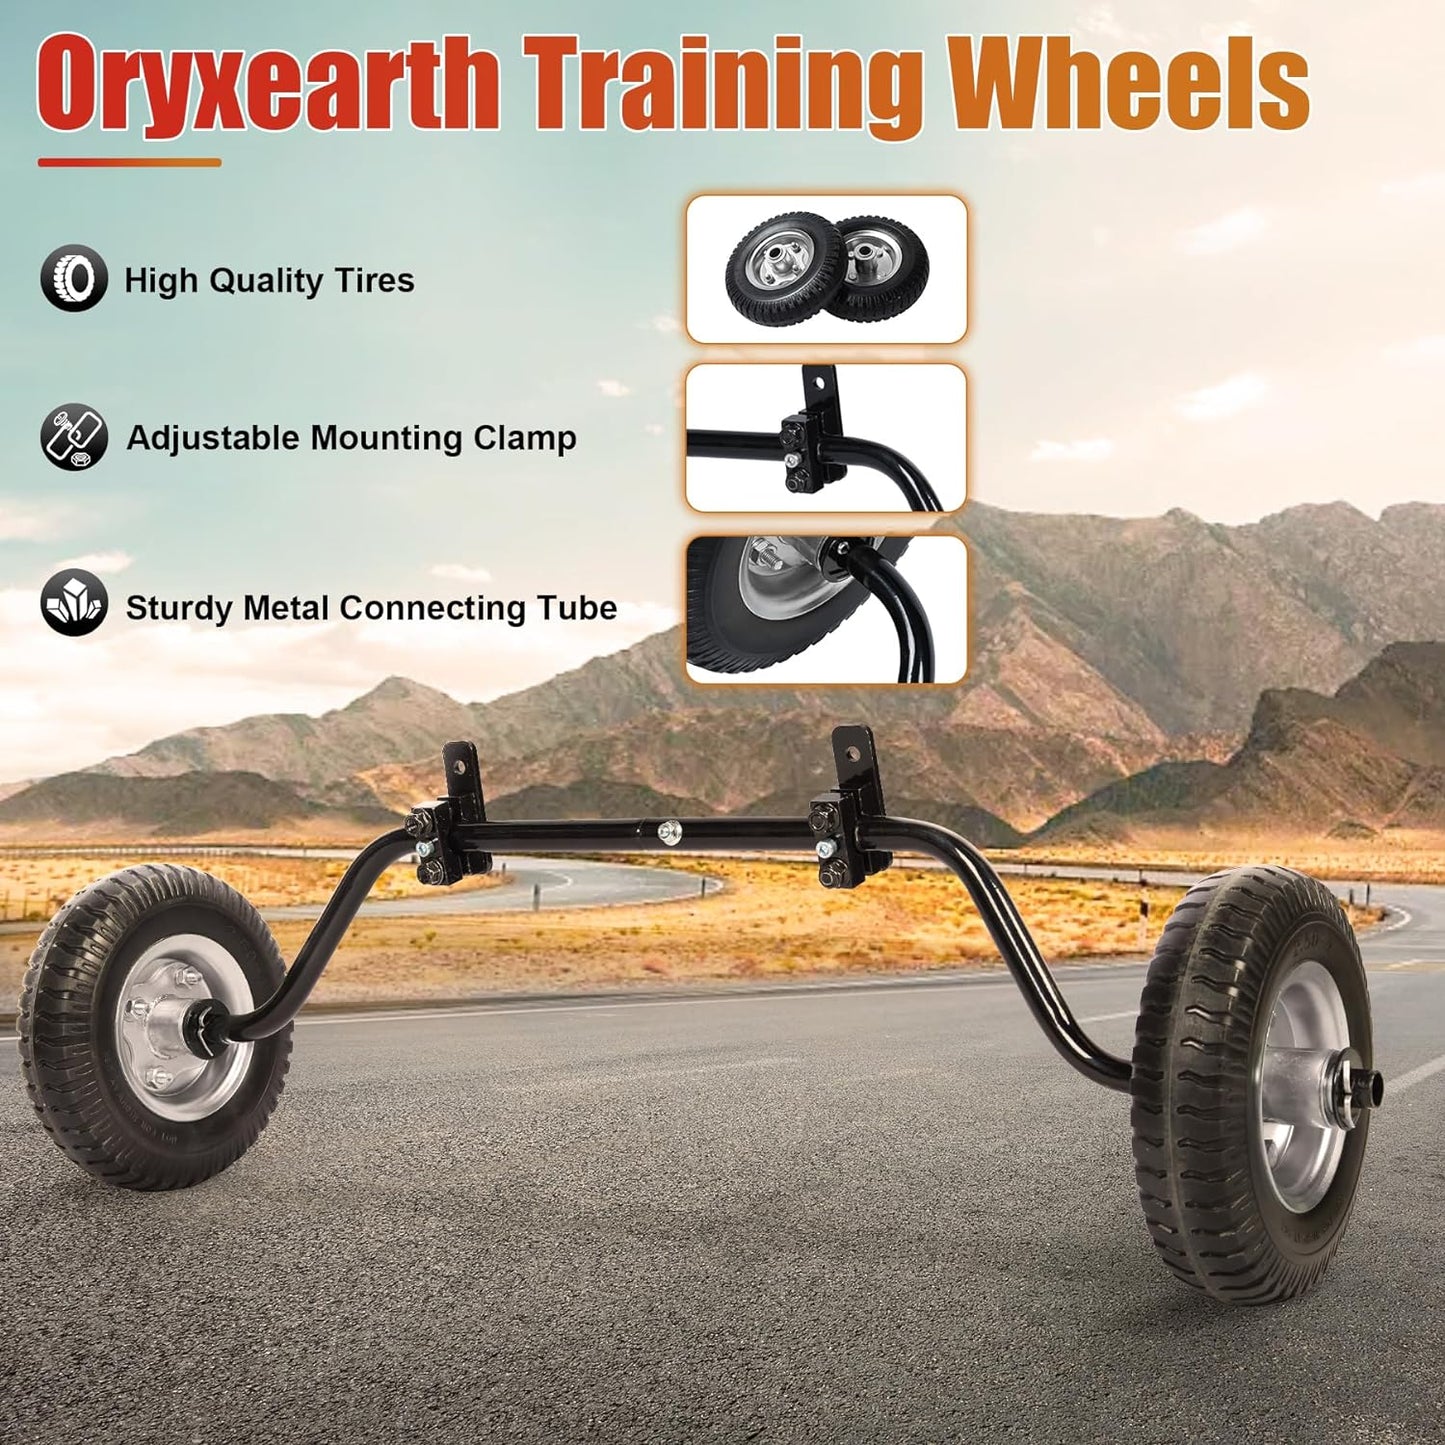 Oryxearth Universelle Dirt Bike-Stützräder, kompatibel mit Coleman Rb100 Realtree Rt100 Motovox Mbx10 Mbx11 Mini-Bike, Kinder-Motorradteile für die meisten Gas-Mini-Pit-Bikes, elektrisches Trail-Bike 